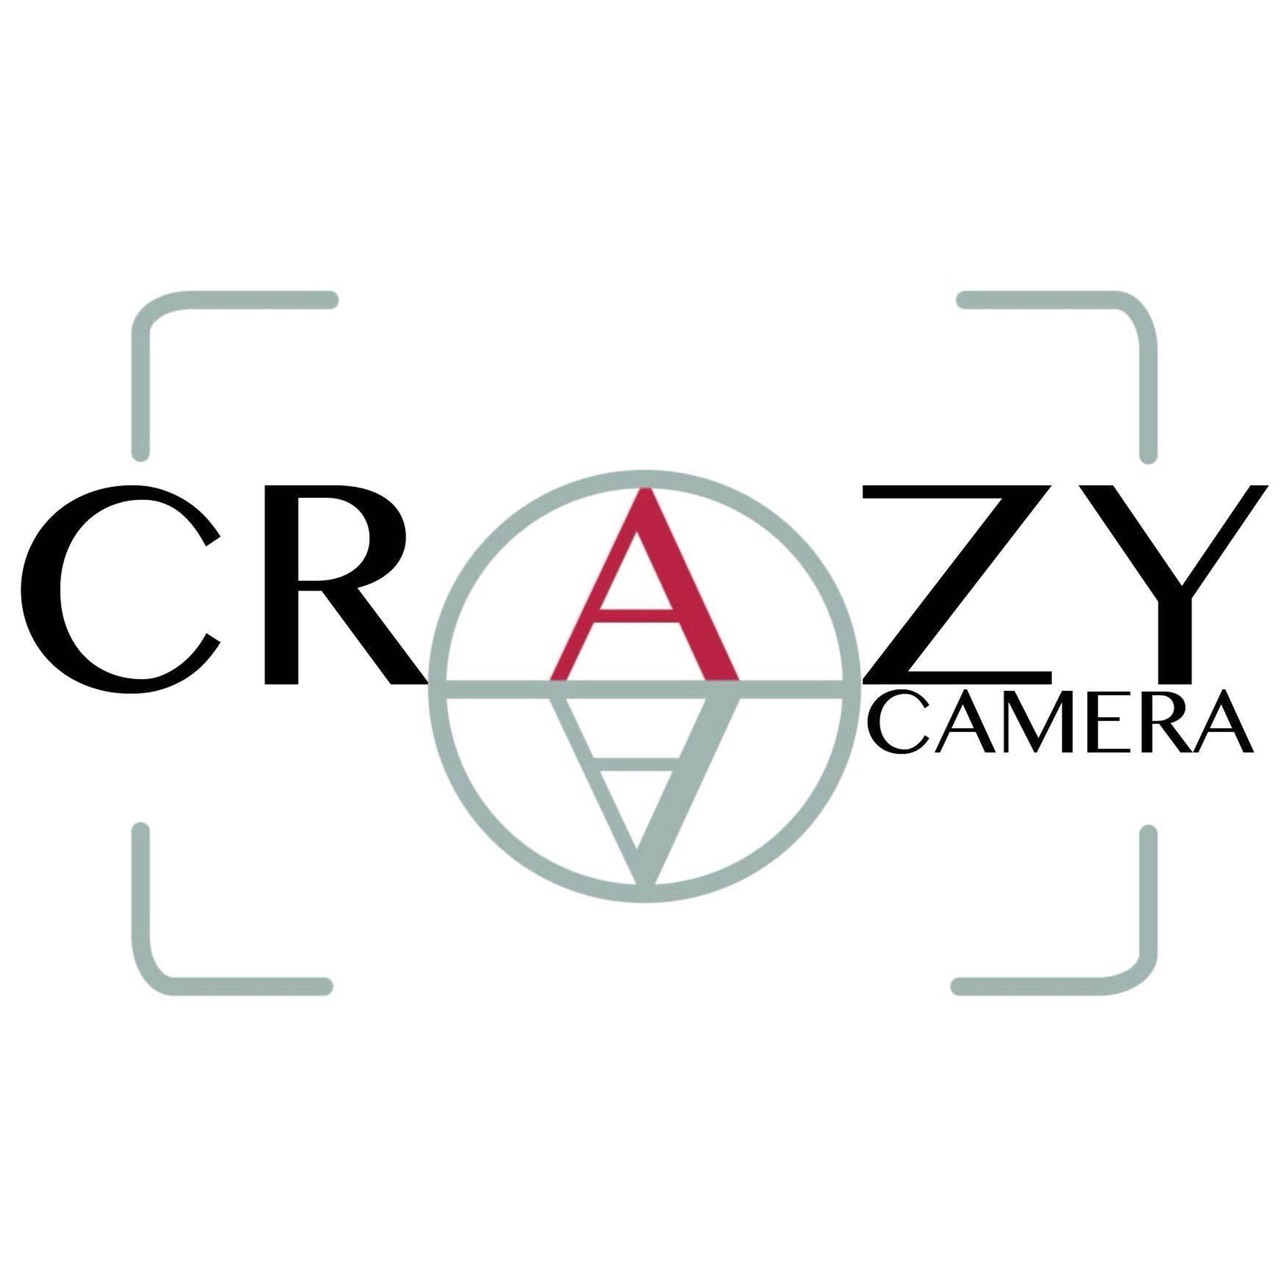 Crazy Camera.jpg